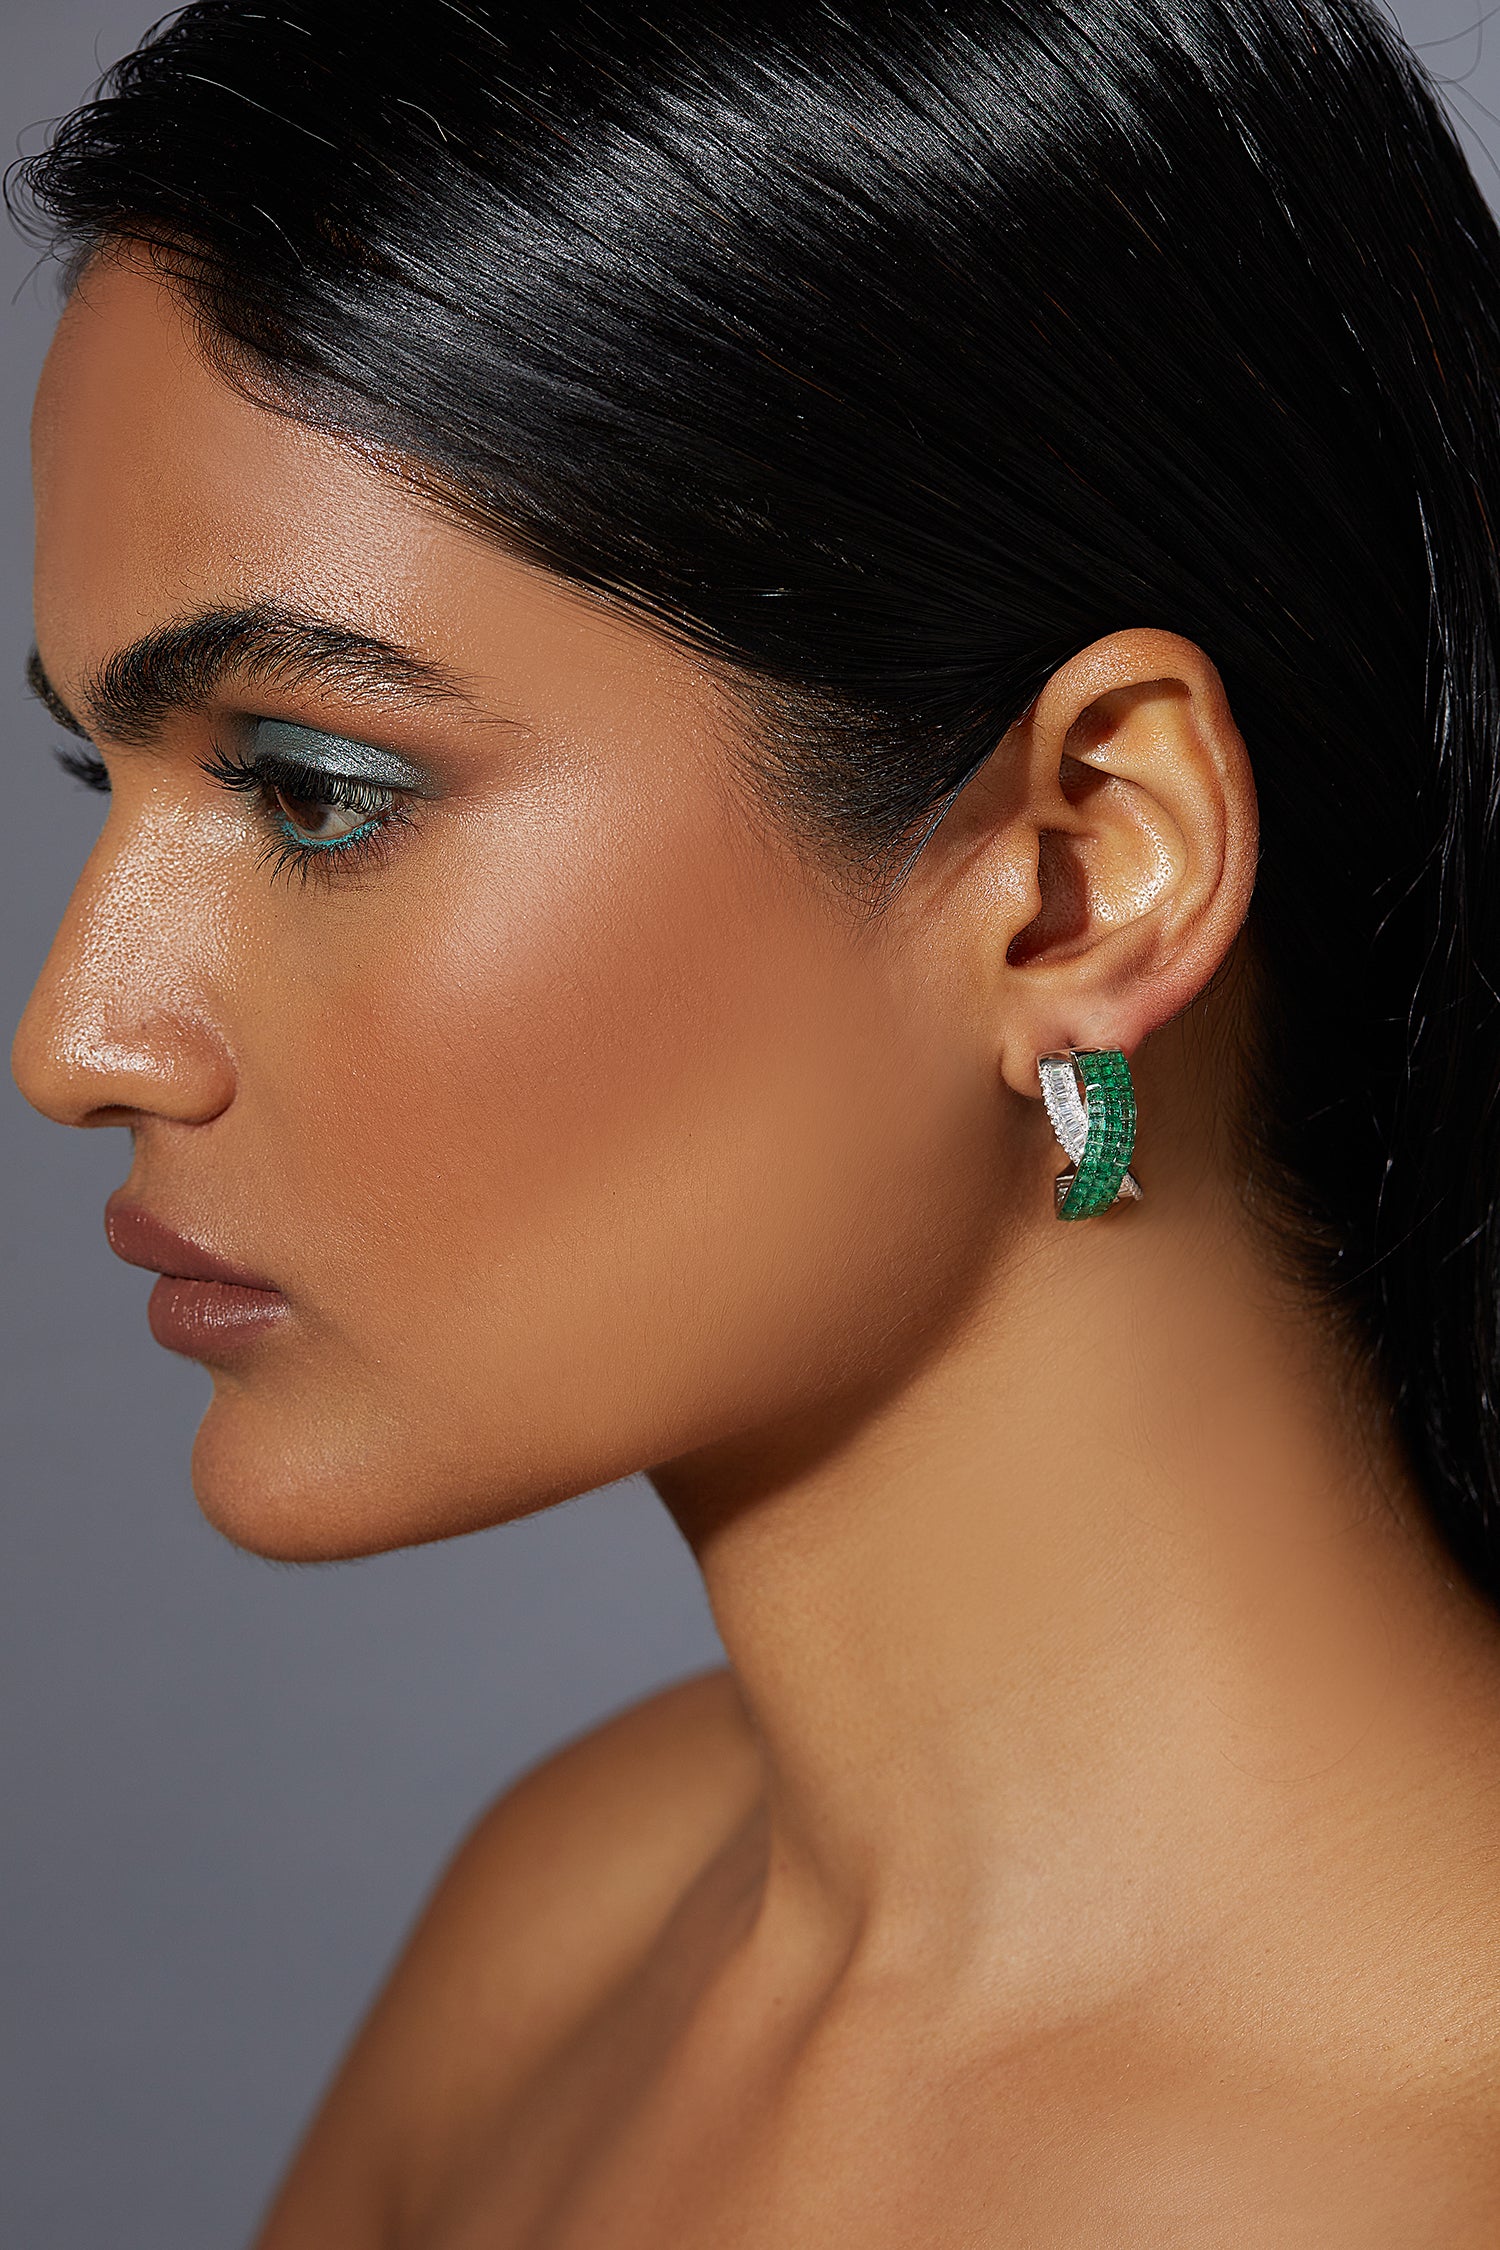 Entwined Emerald Green Twilight Earrings